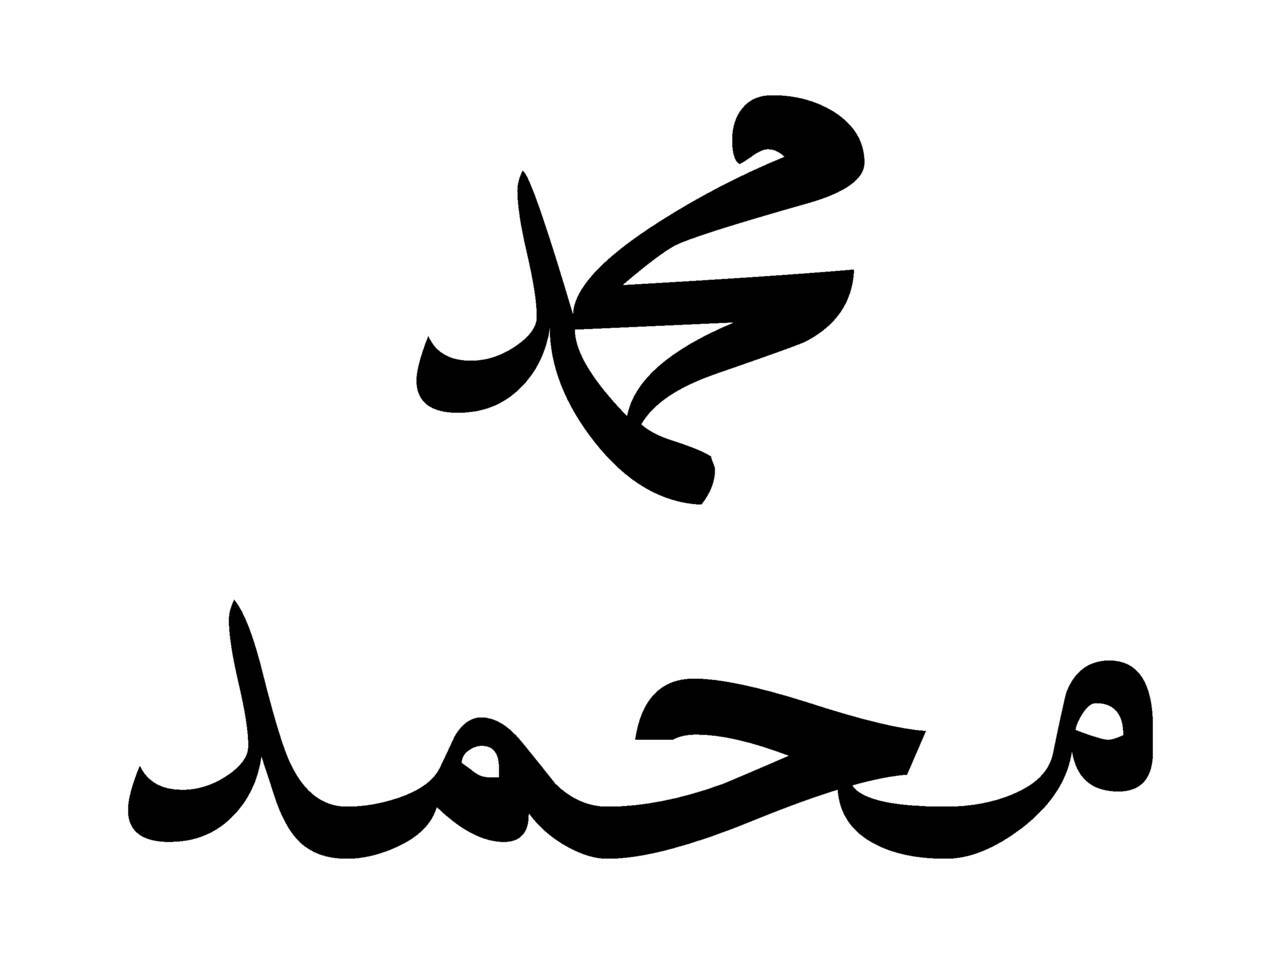 Имя Мухаммеда в каллиграфическом и обычном вариантах написания. В исламе действует особый запрет на изображение людей, в особенности пророка